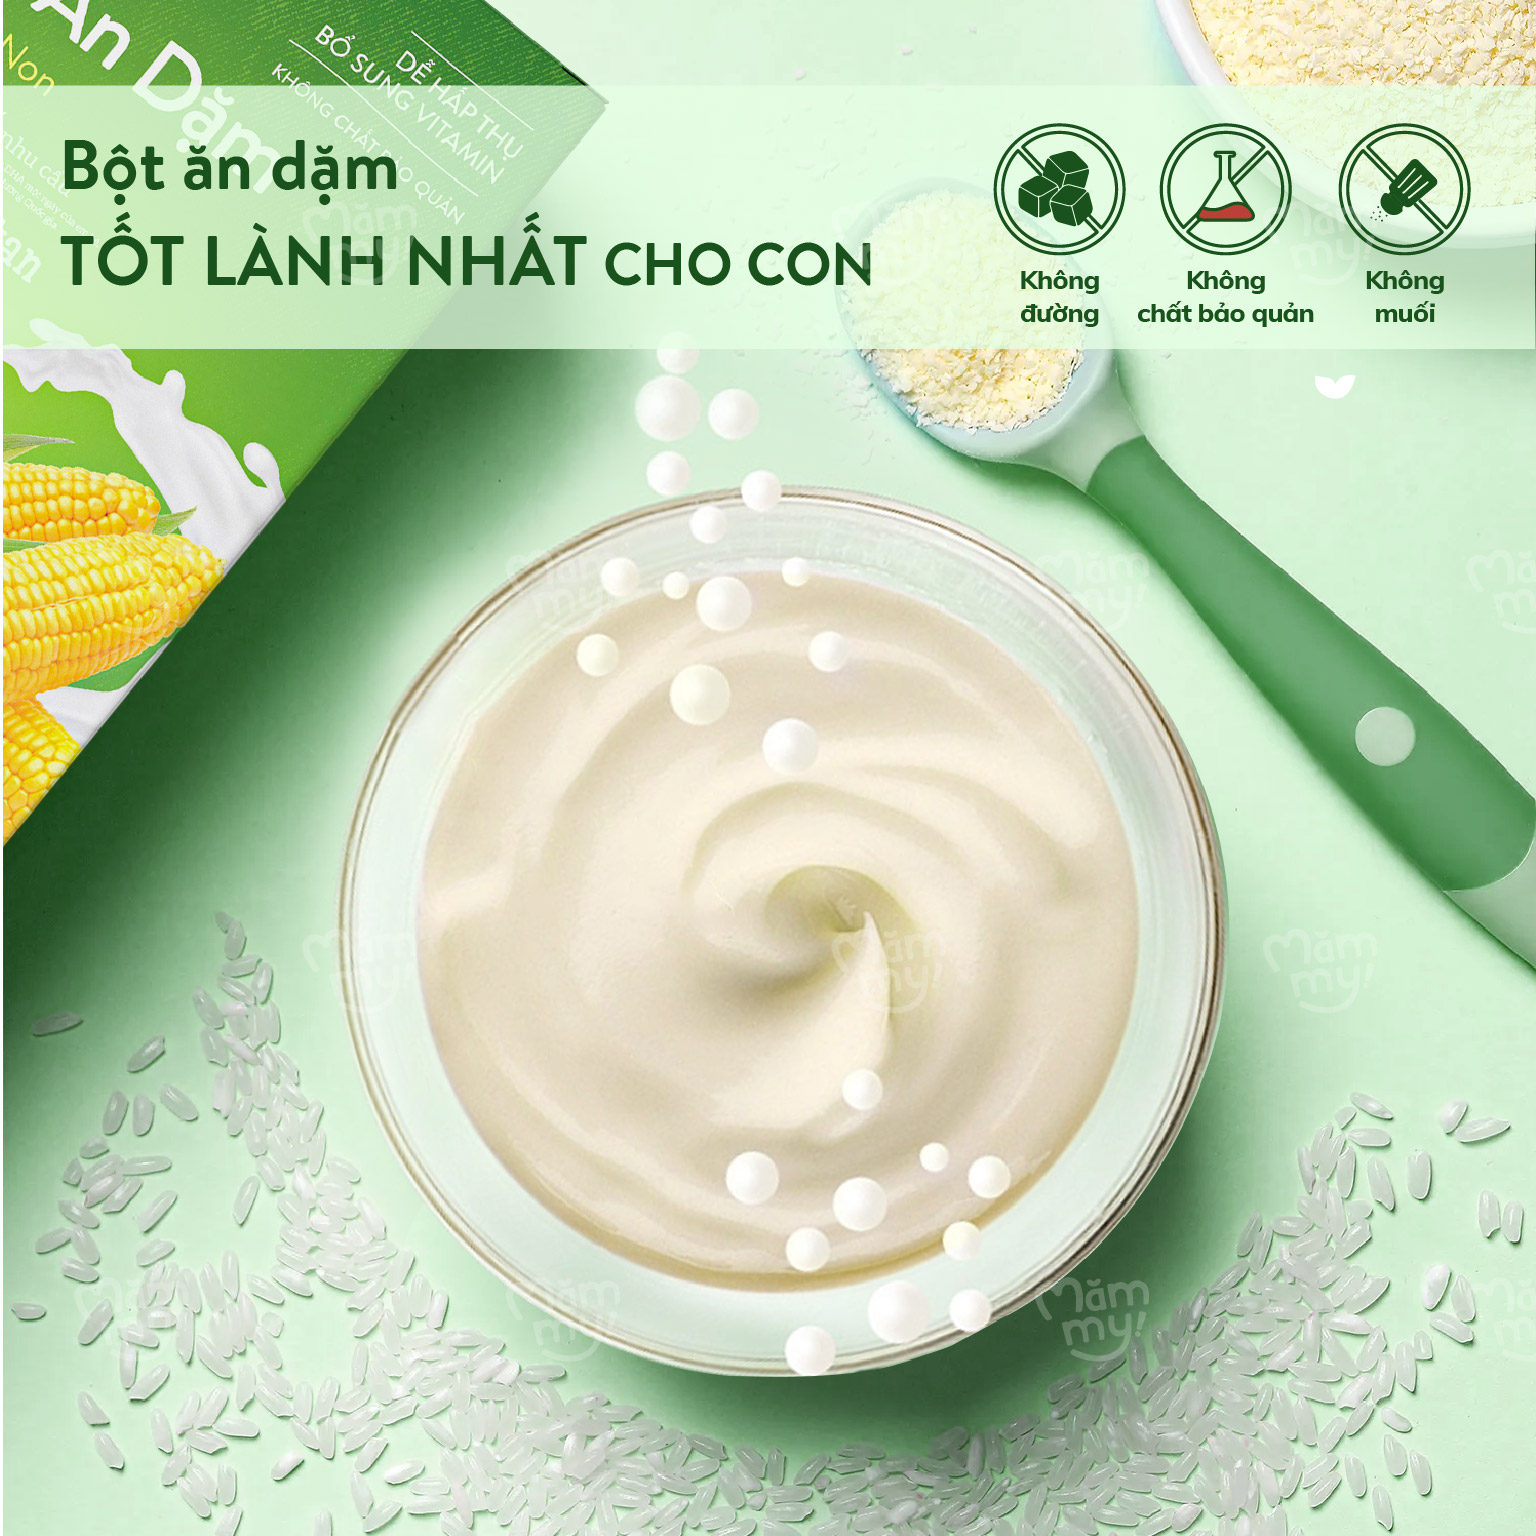 Bột ăn dặm sữa bắp non Mămmy cung cấp chất xơ hòa tan và Canxi bổ sung vitamin cho bé - 140gr